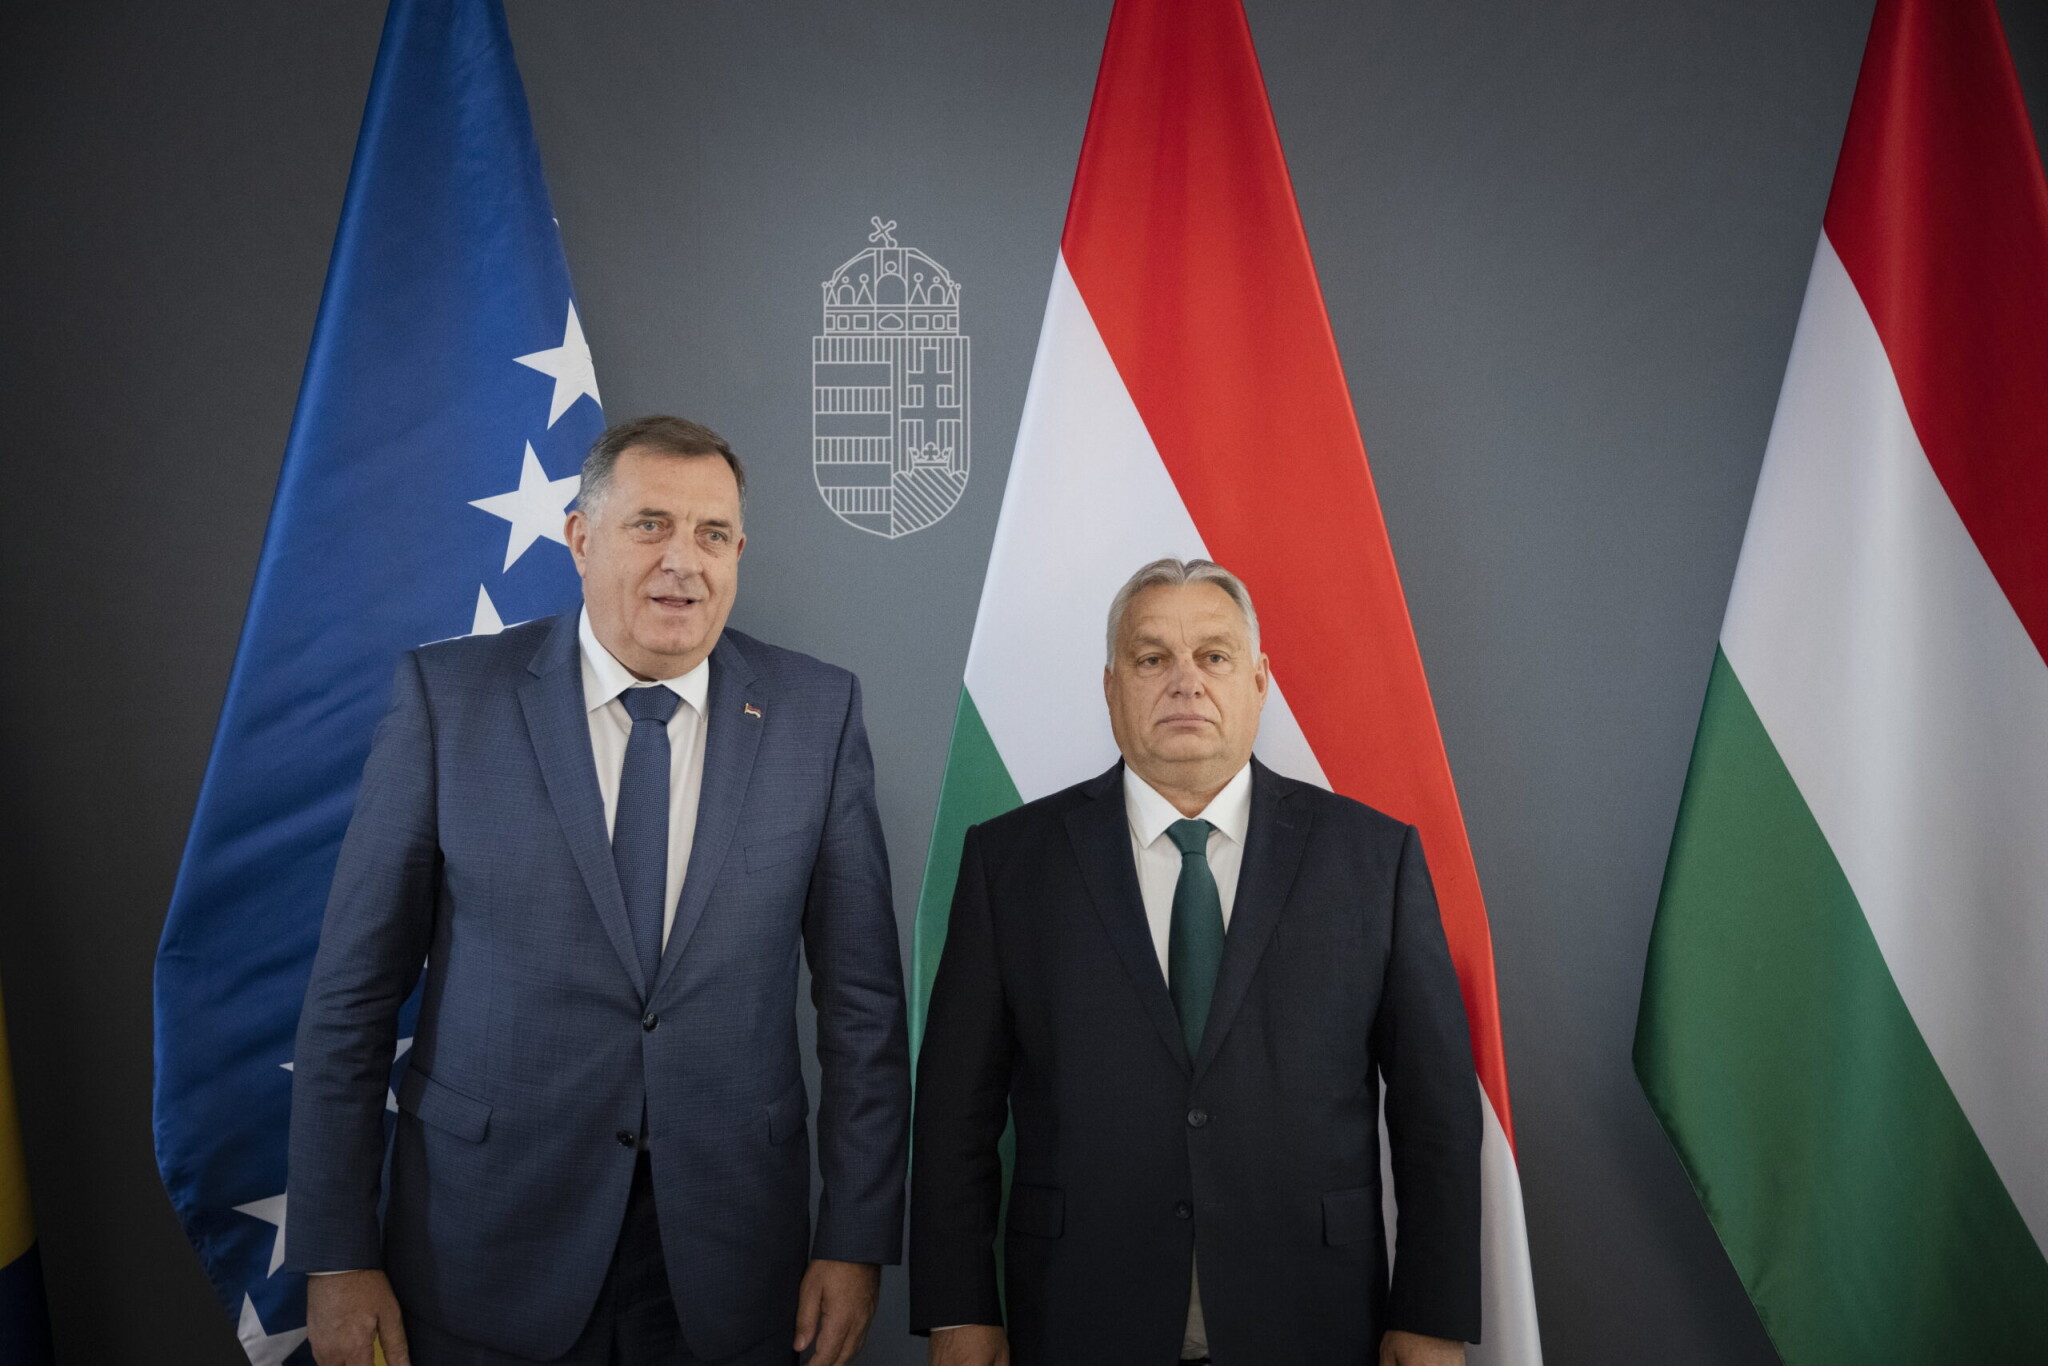 Orbán: A törpe vetett ki szankciót az óriásra